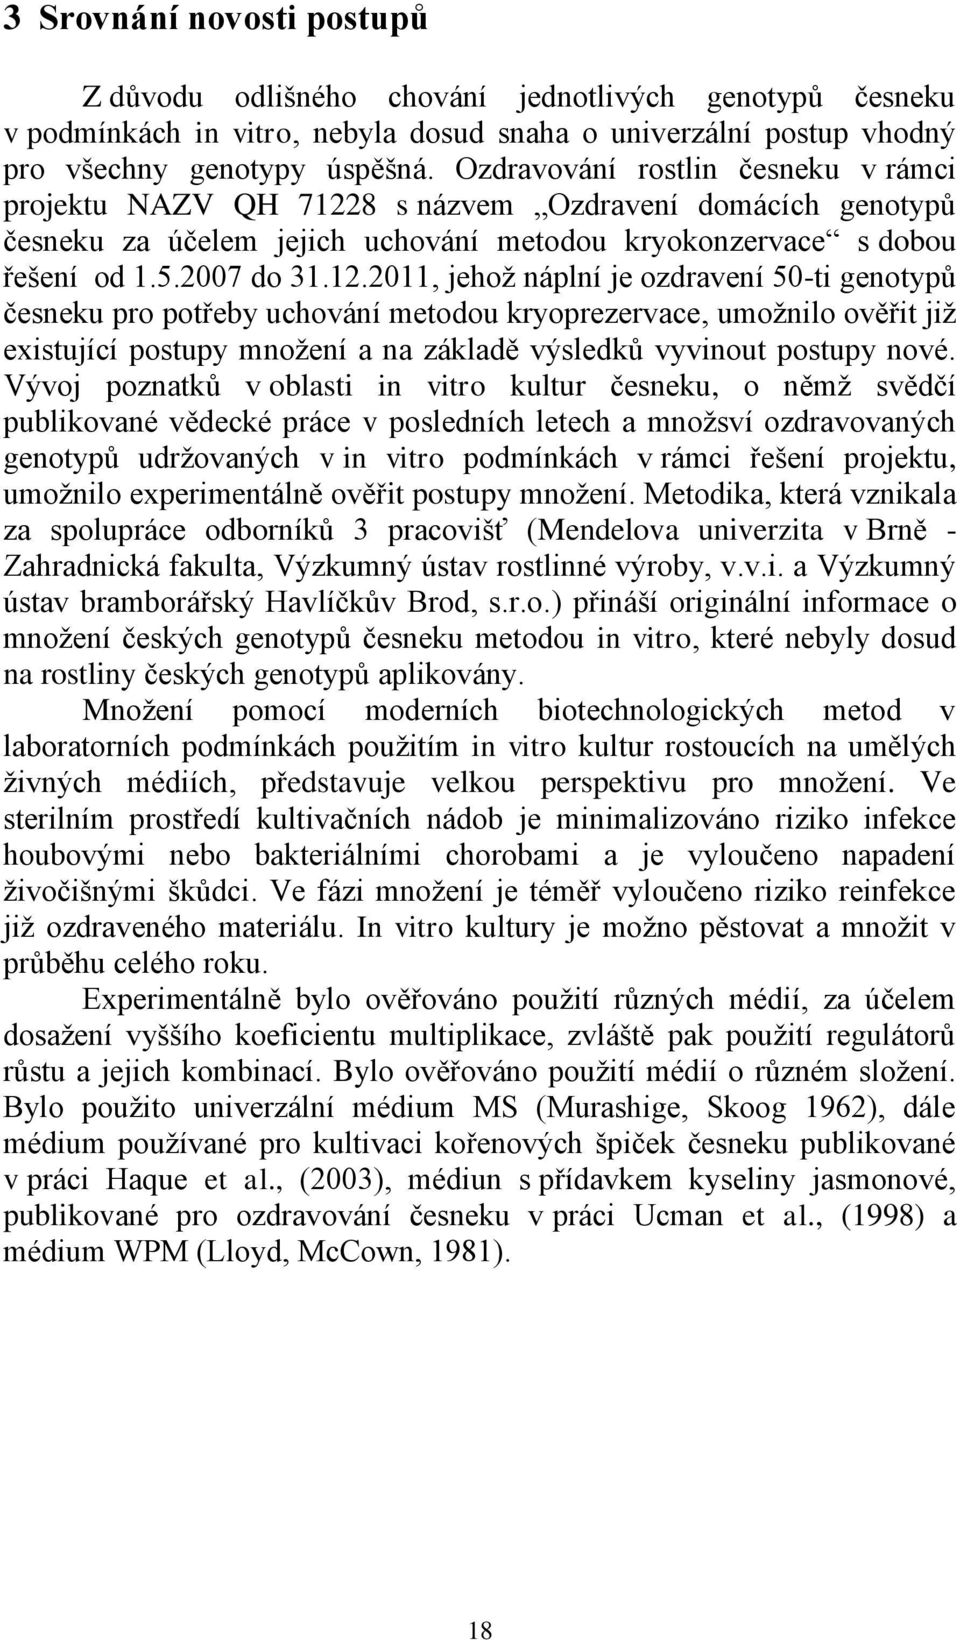 8 s názvem Ozdravení domácích genotypů česneku za účelem jejich uchování metodou kryokonzervace s dobou řešení od 1.5.2007 do 31.12.